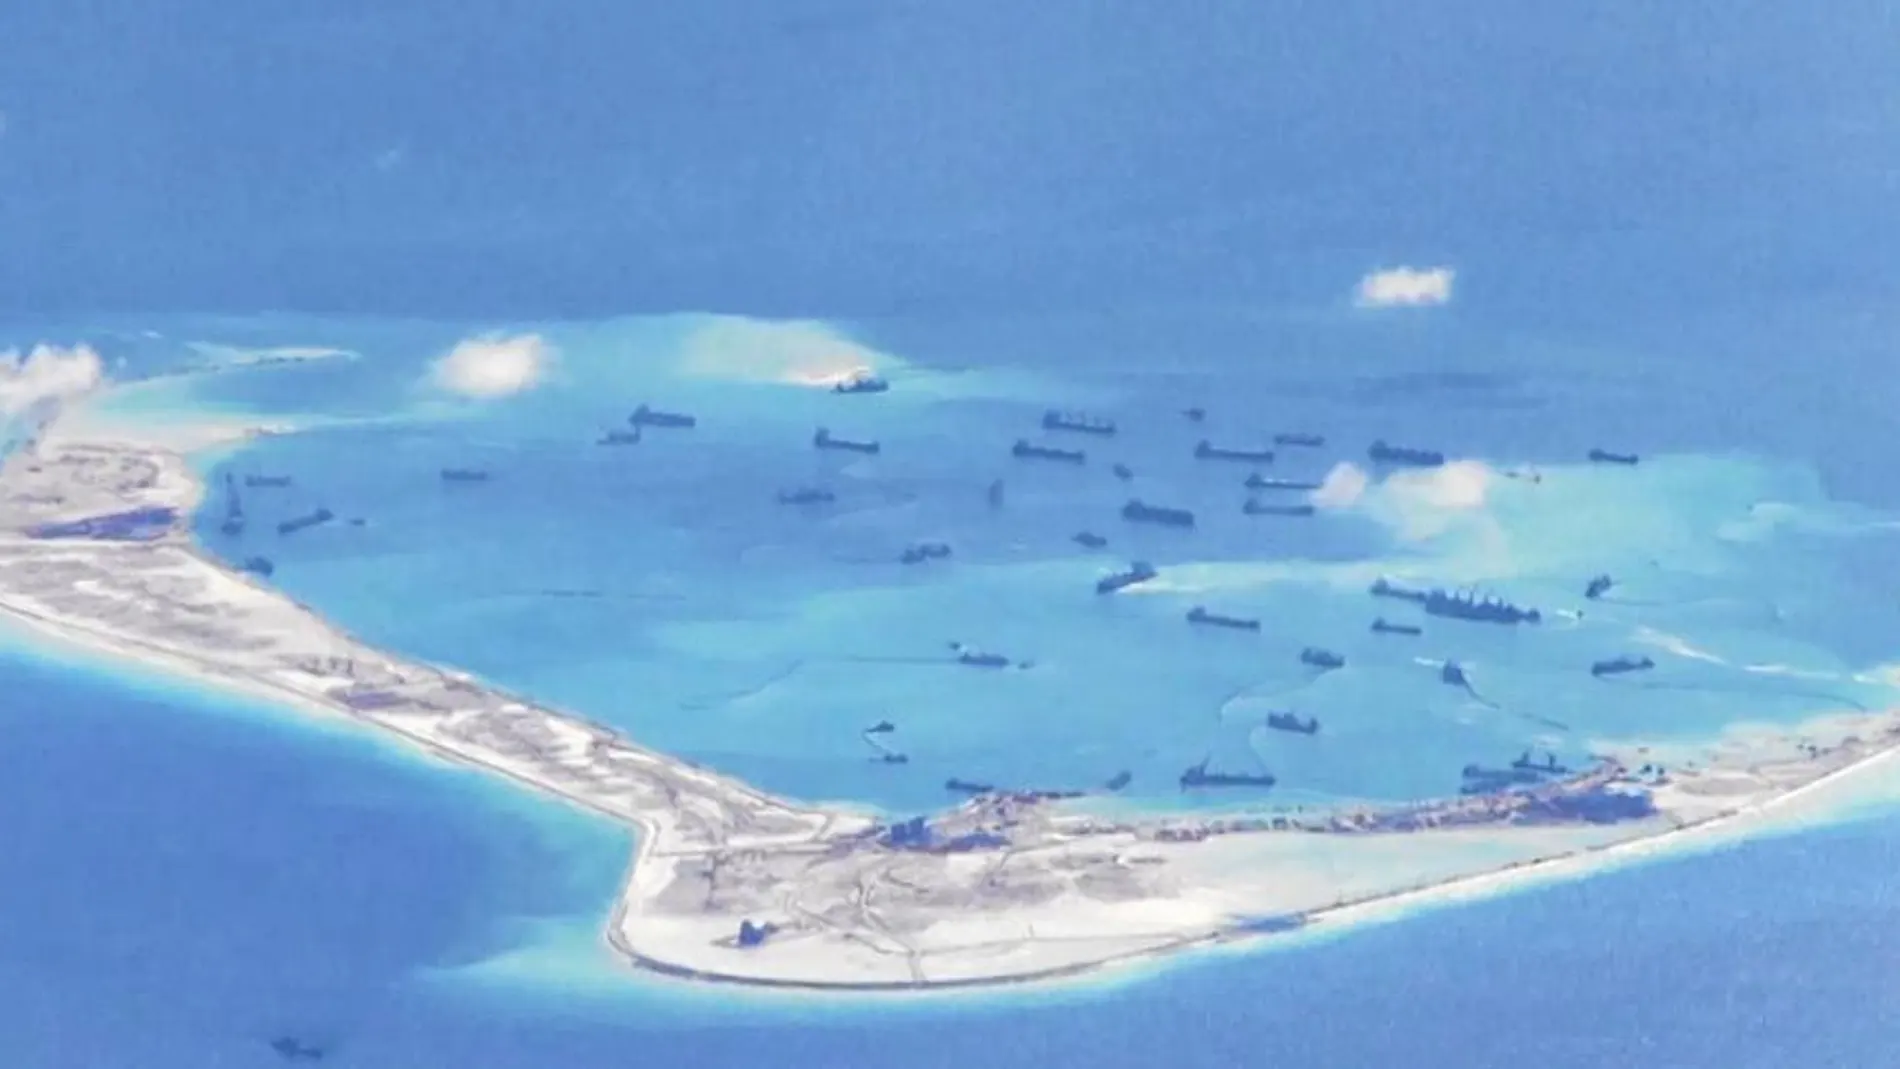 Imagen realizada desde un avión estadounidense que muestra al Ejército chino desplegado, así como las construcciones en las Islas Spratly